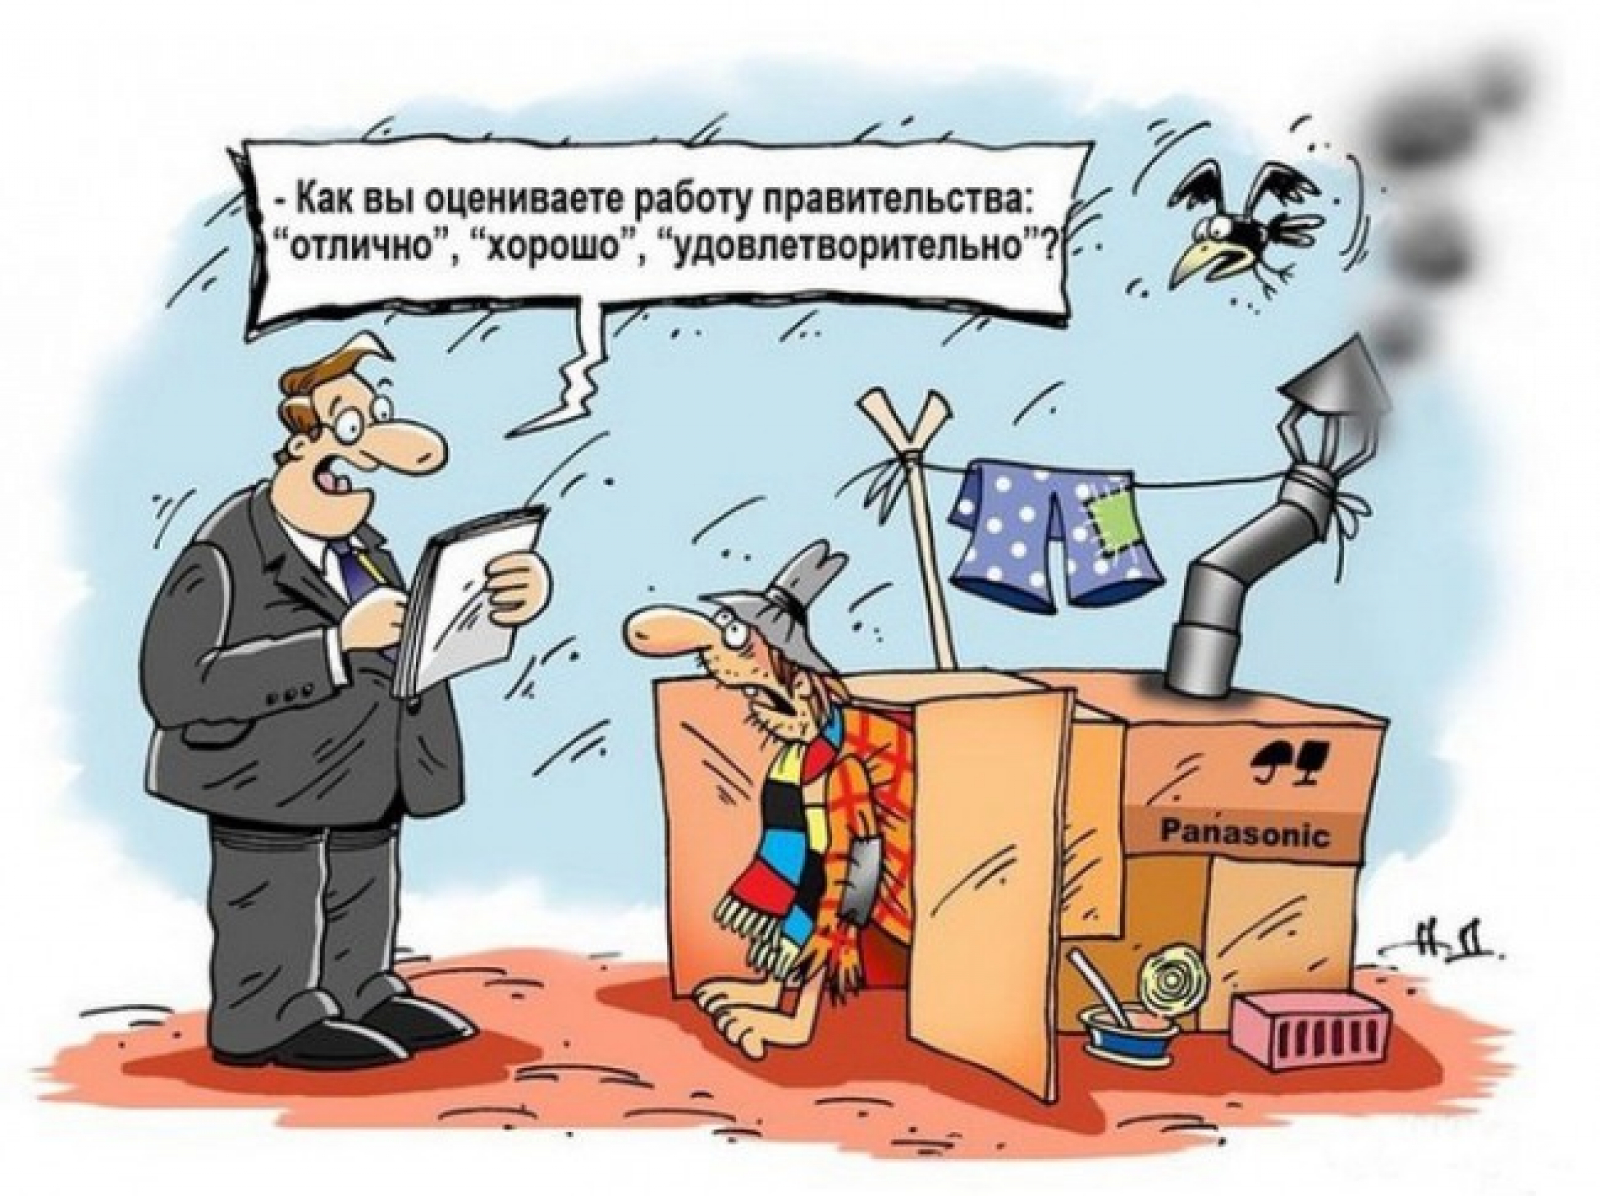 Правительство карикатура